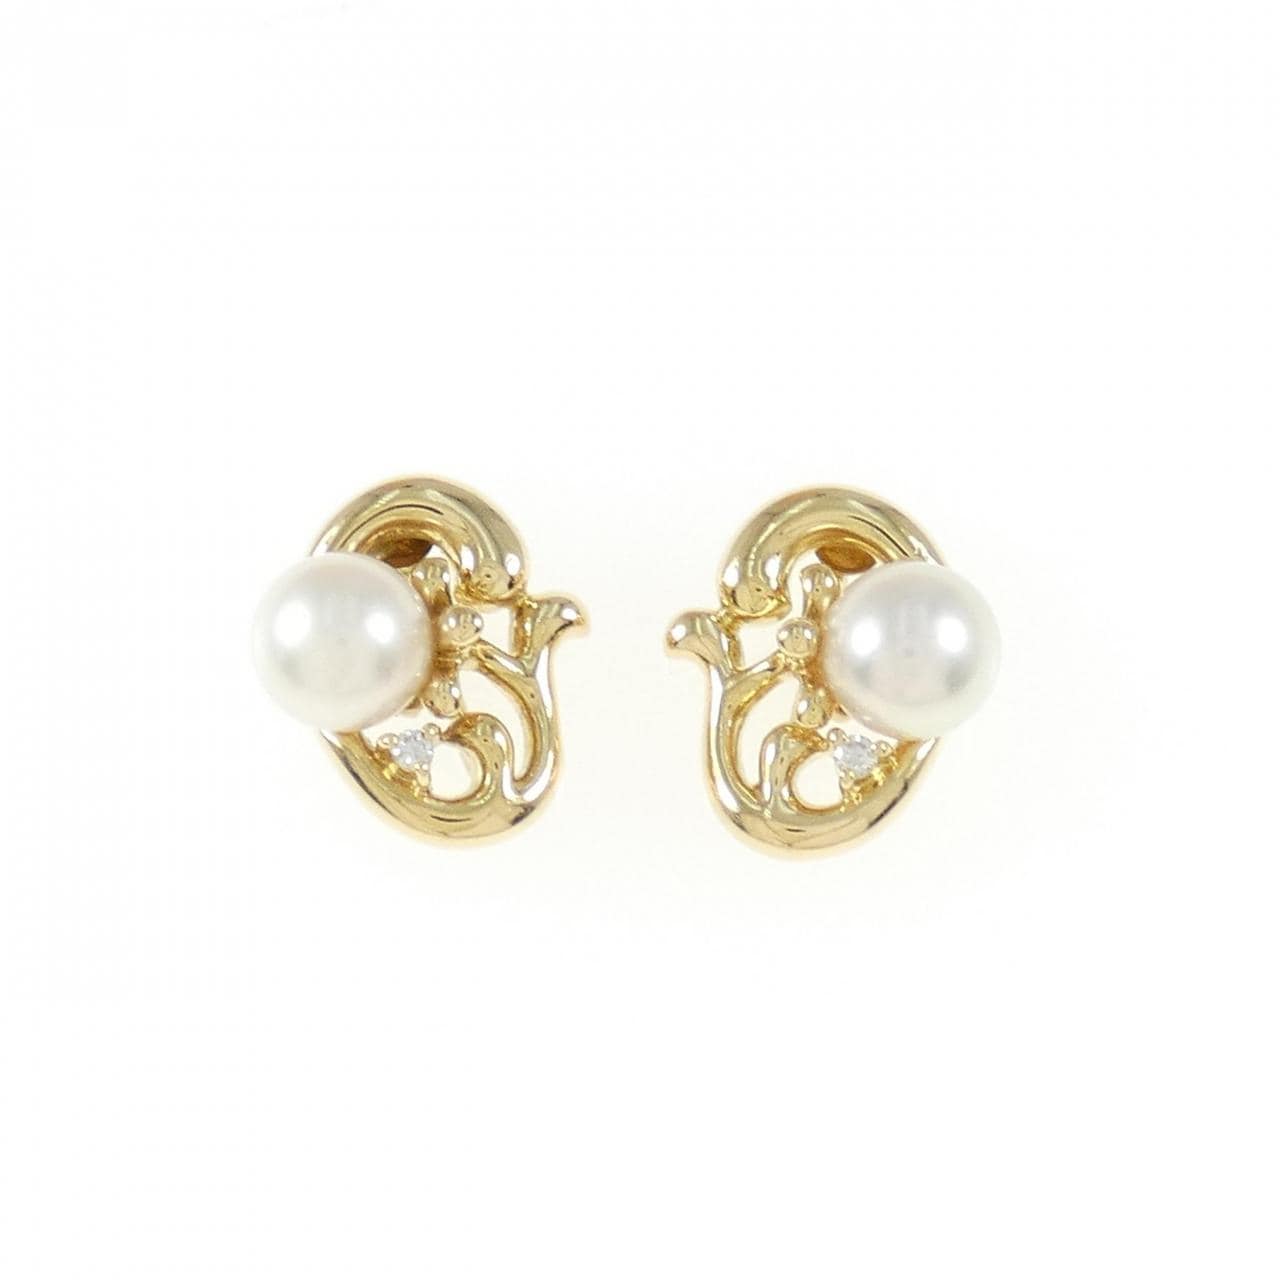 K18YG Akoya pearl earrings 6.6mm